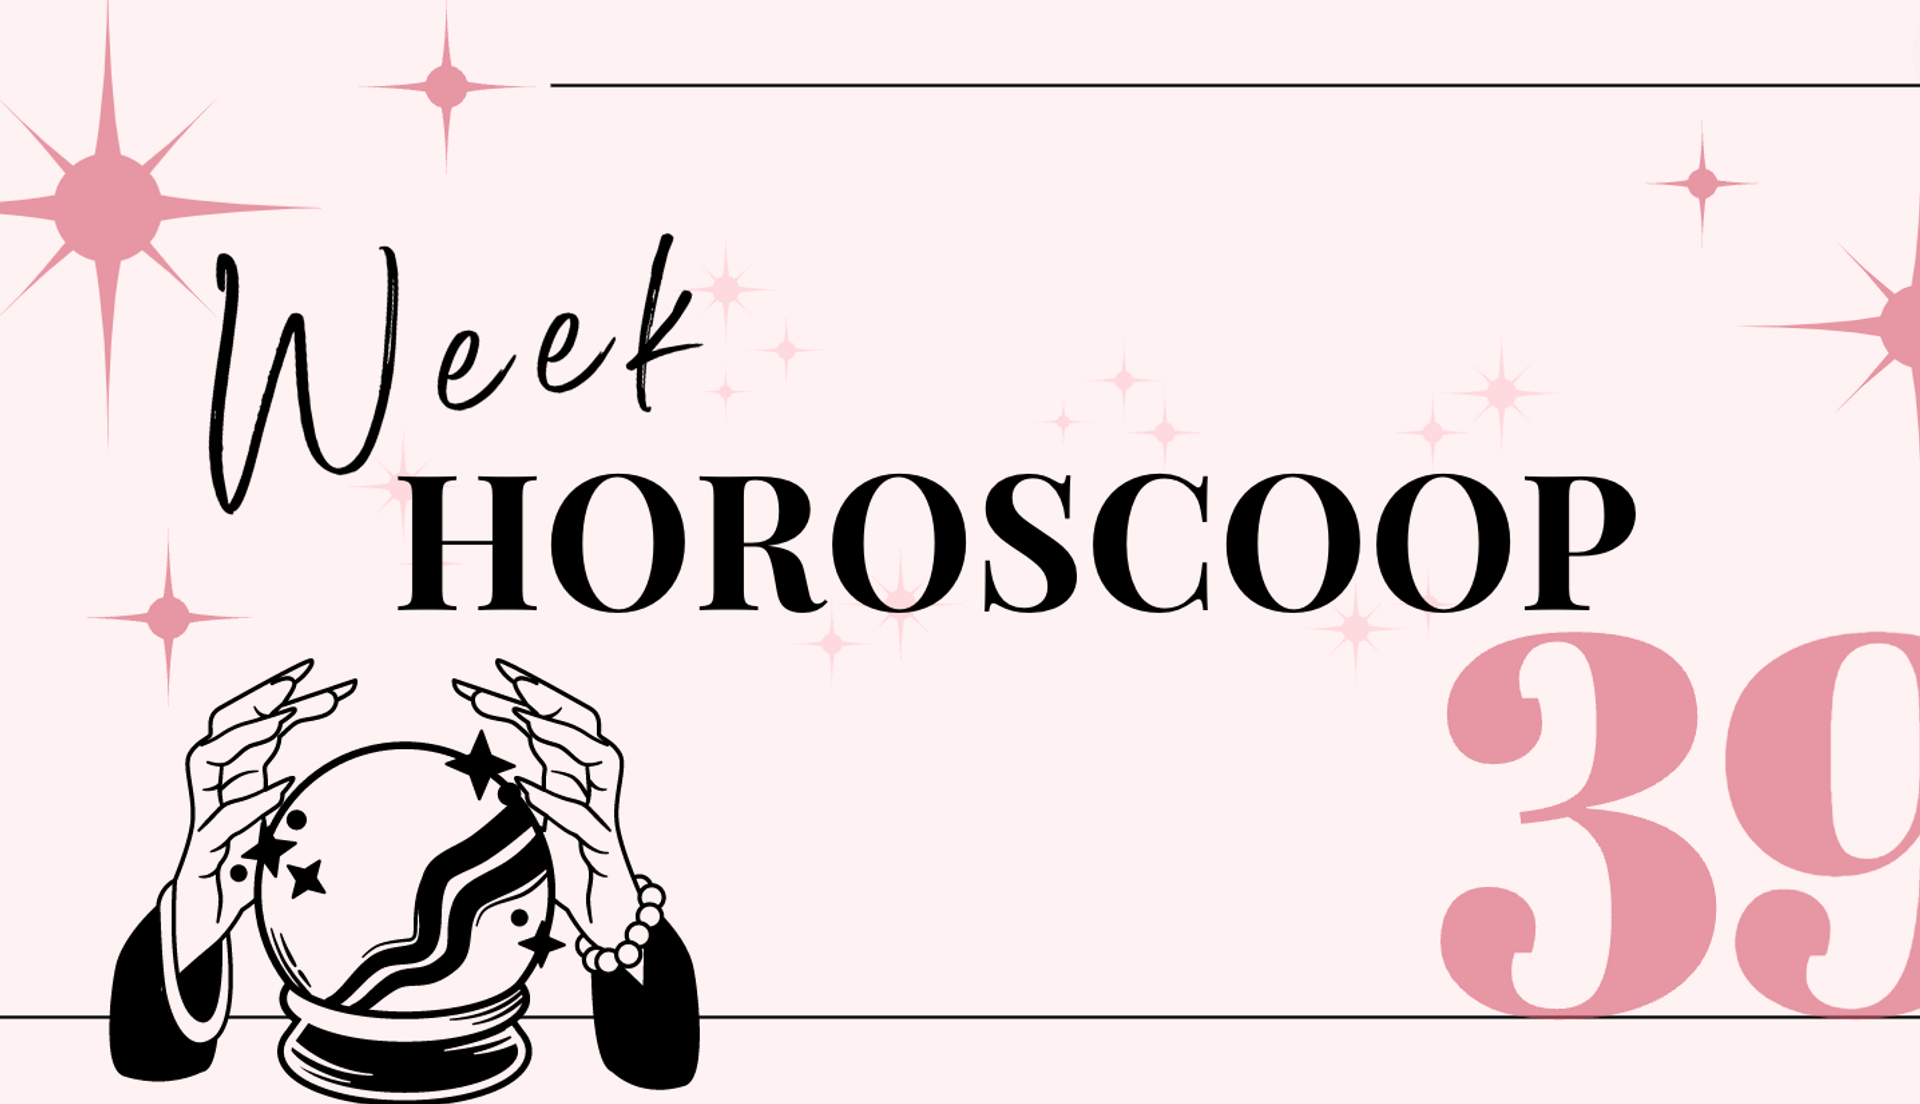 weekhoroscoop-week-39